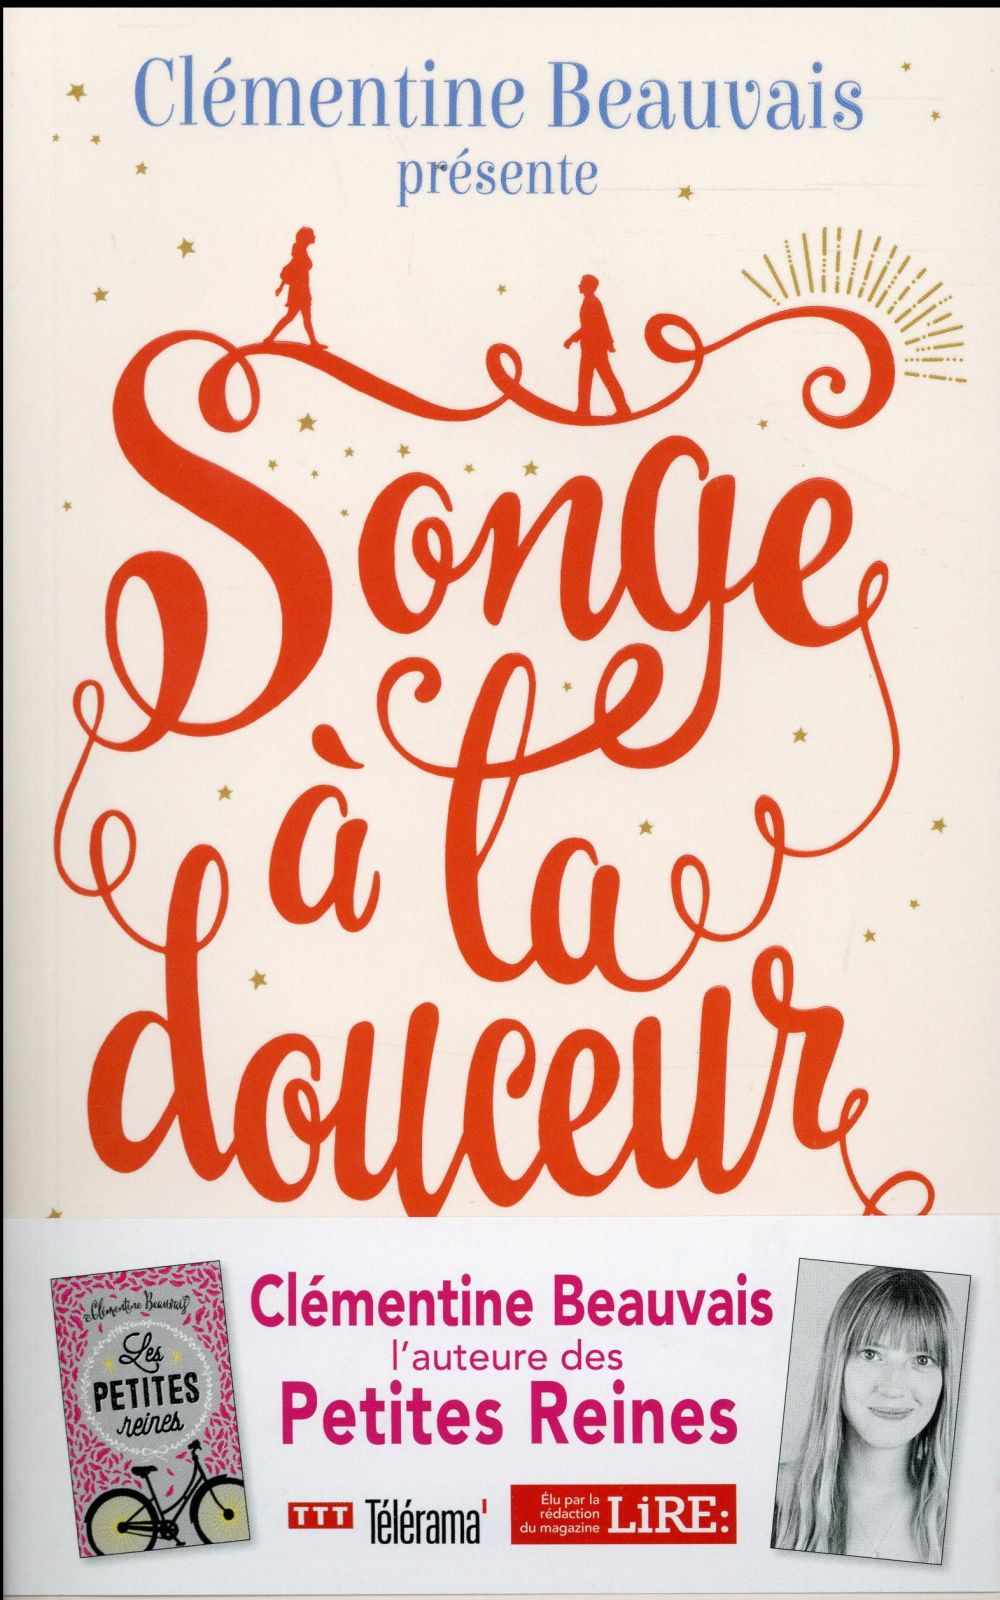 Les Petites Reines book by Clémentine Beauvais